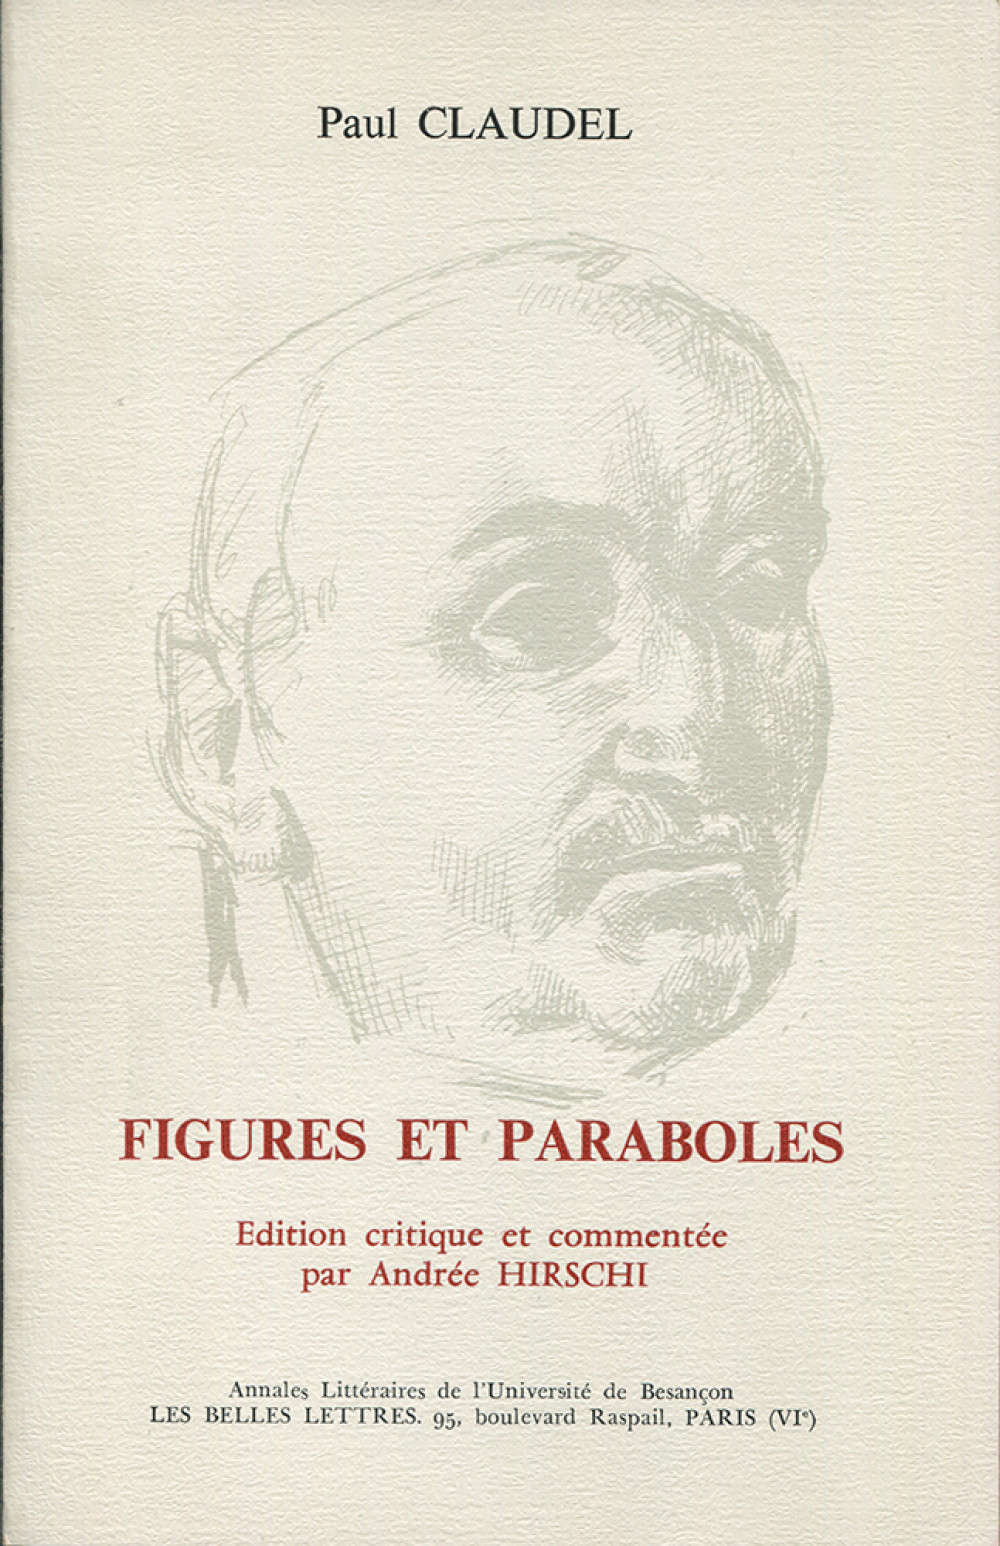 Figures et paraboles de Paul Claudel